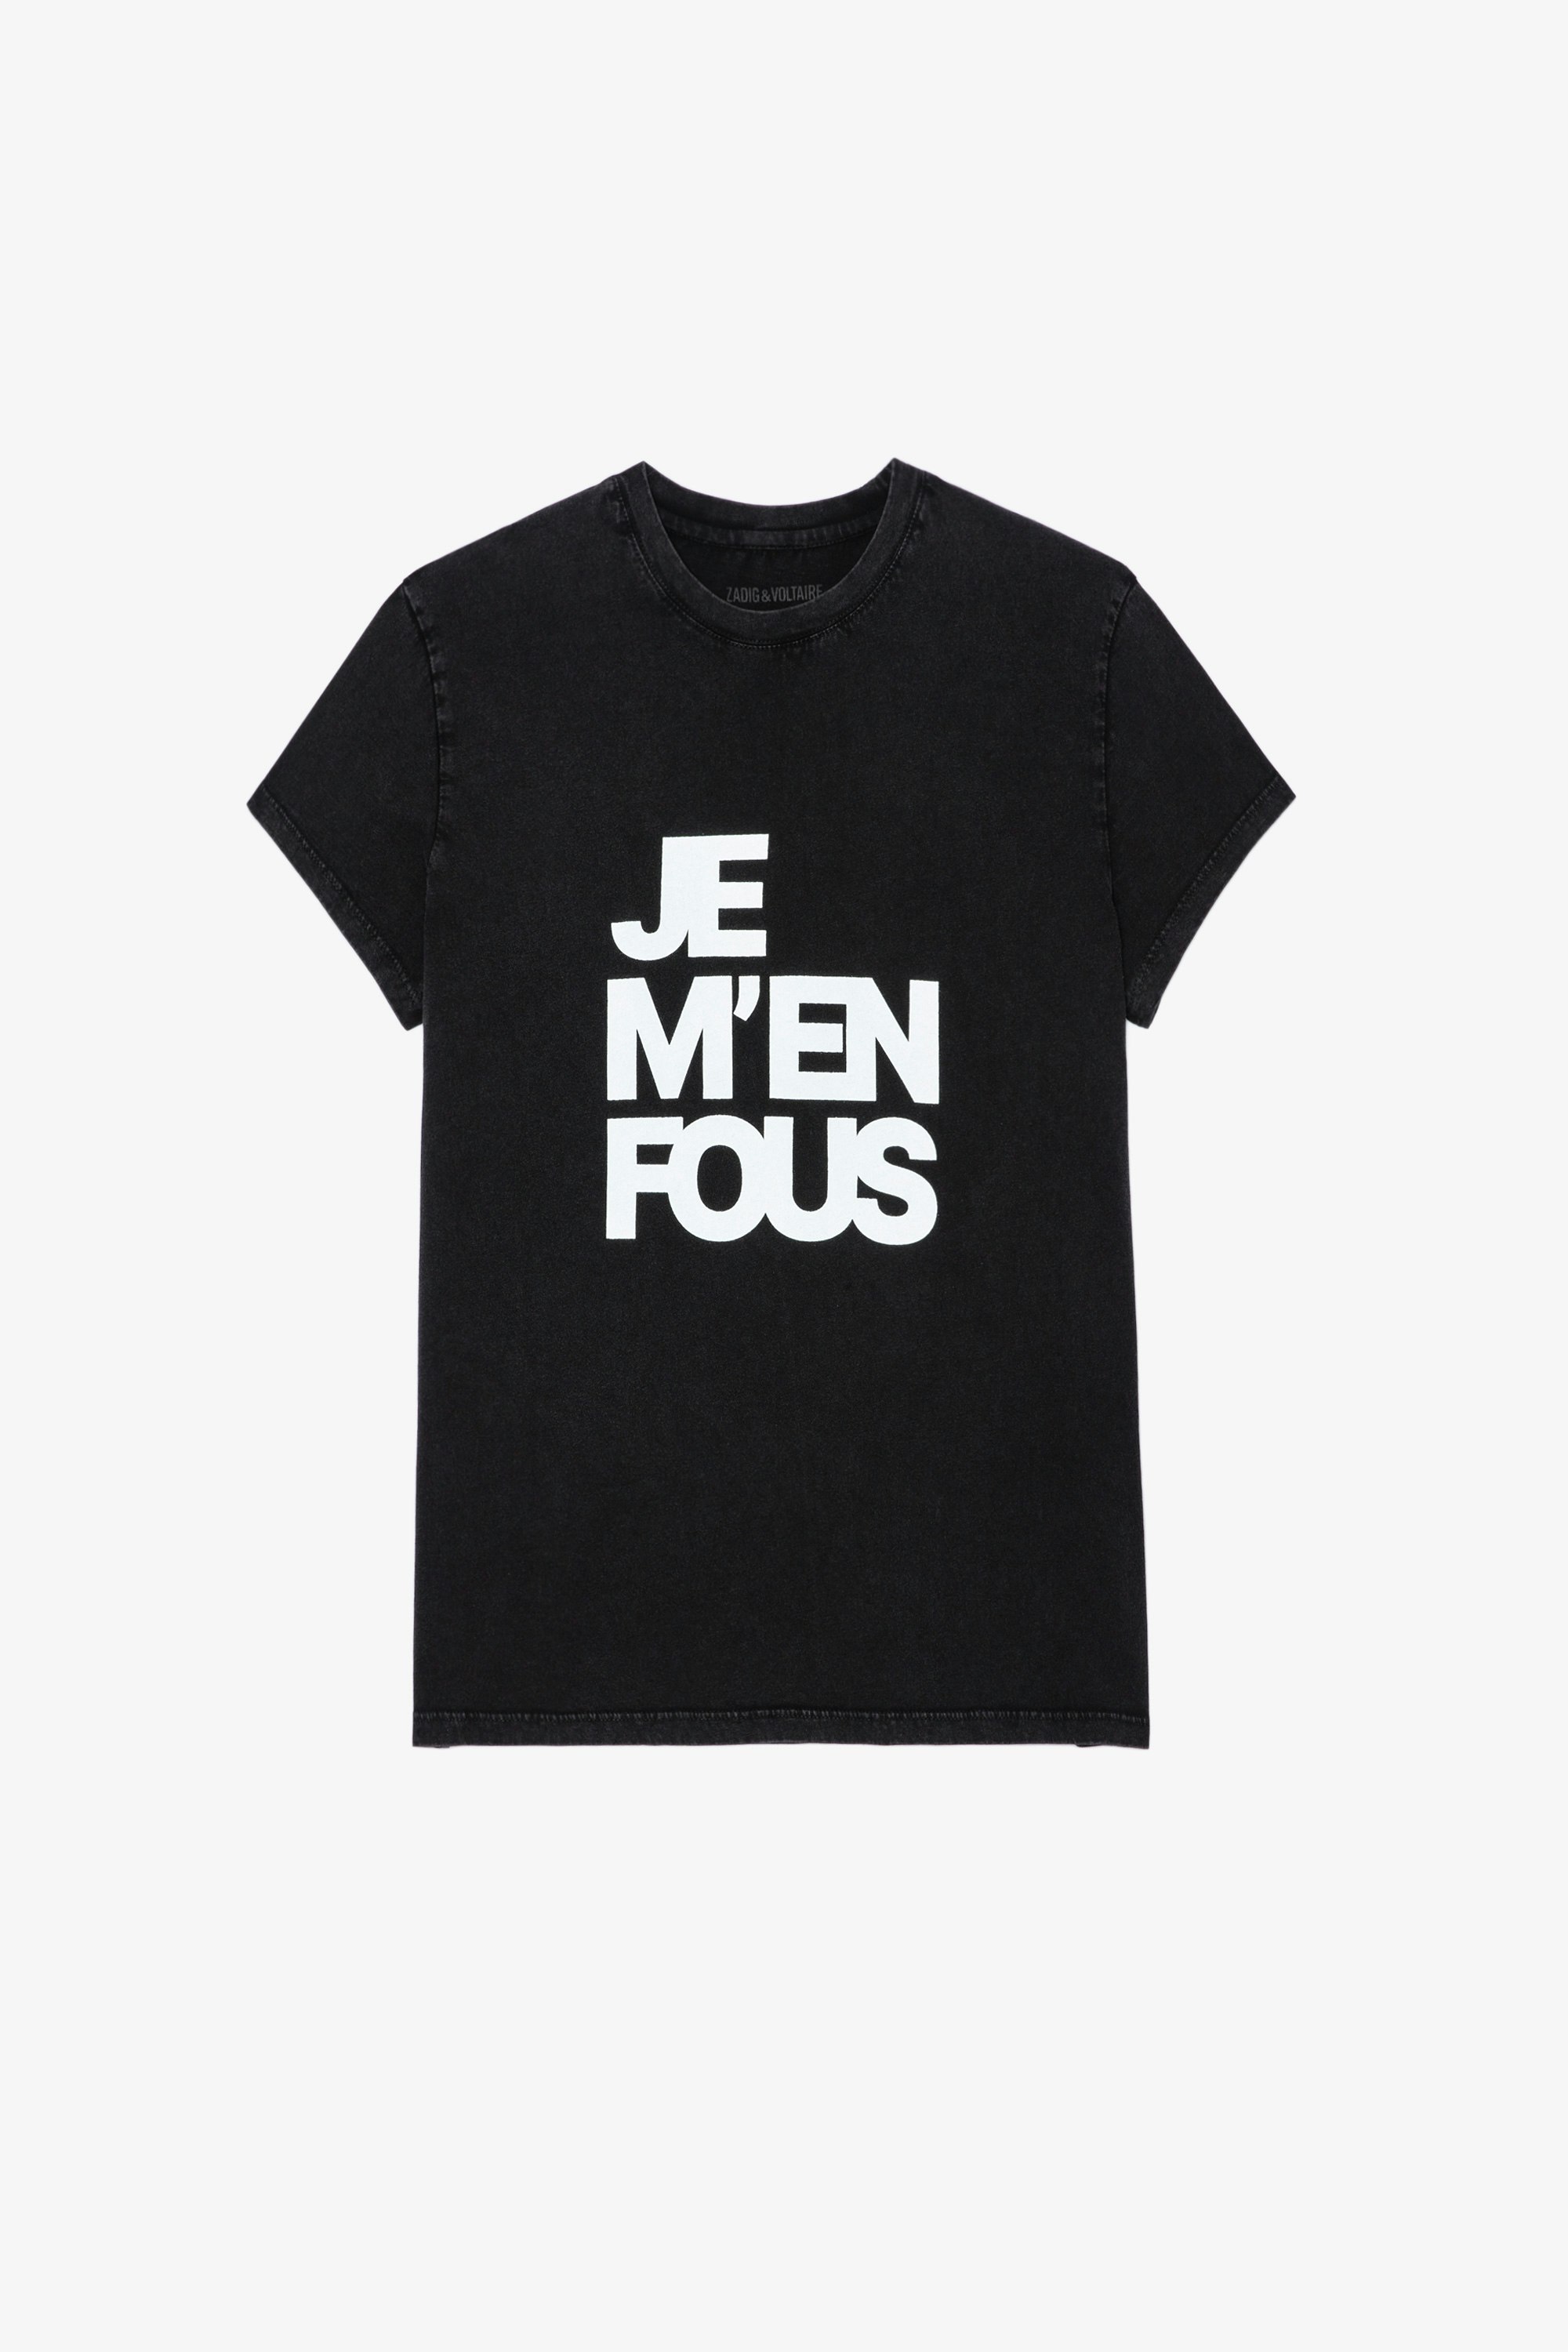 Zoe Ｔシャツ Women’s black cotton T-shirt with “Je m’en fous” slogan